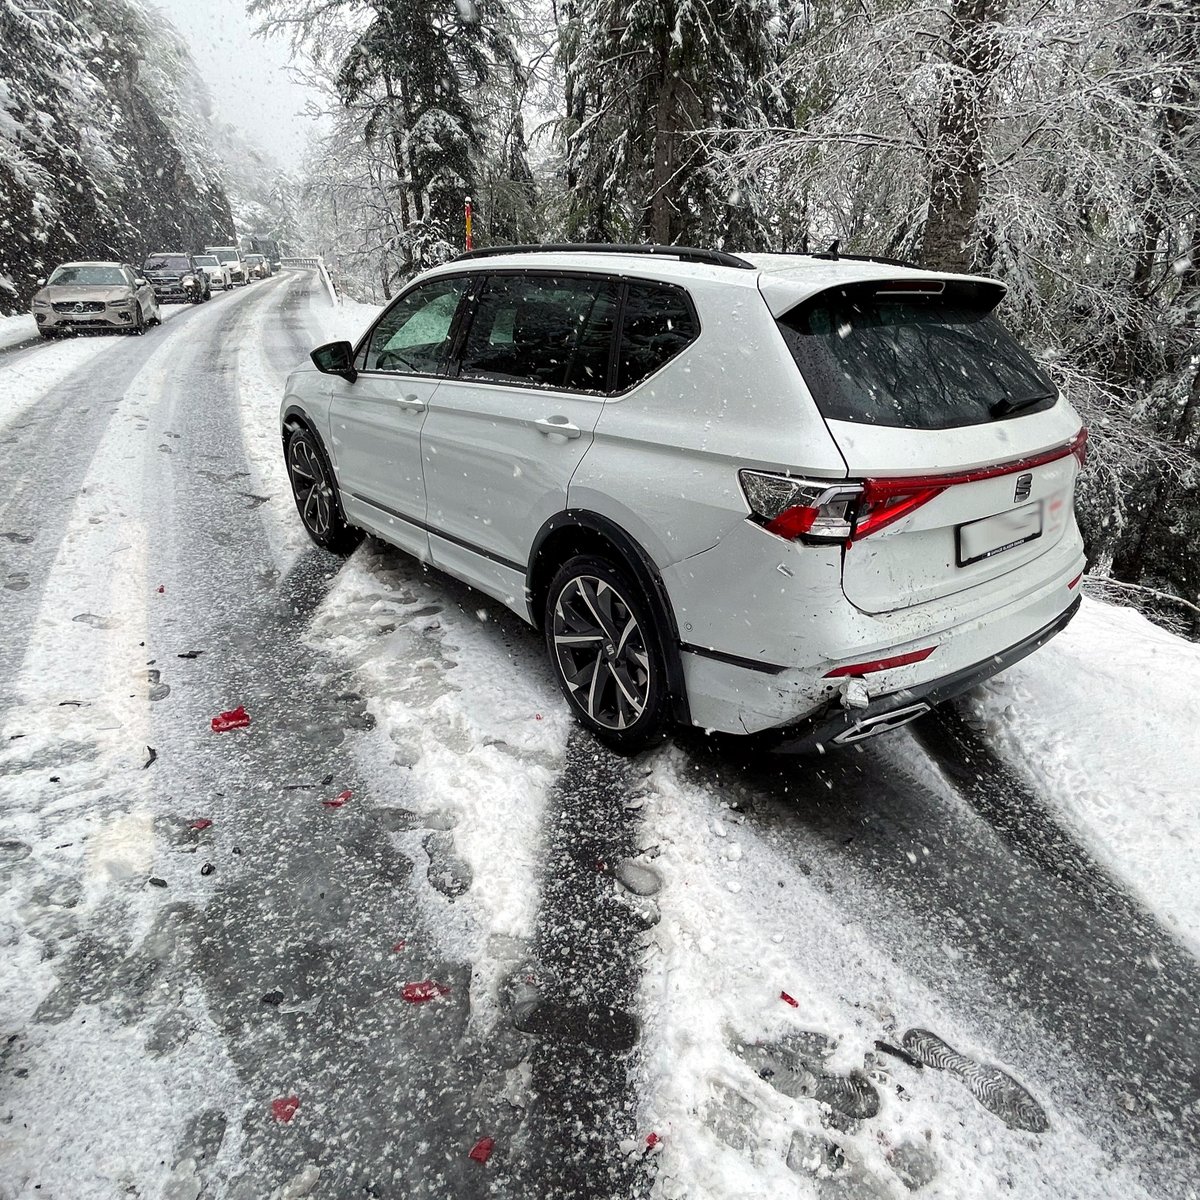 Gestern kam es in #Lungern auf der schneebedeckten Strasse zum #Auffahrunfall. Eine Touristin (31) konnte ihr Auto trotz #Vollbremsung nicht stoppen und prallte in eine stehende Autokolonne. Keine Verletzten, hoher Sachschaden. Fahrzeuge hatten entsprechende #Winterausrüstung.